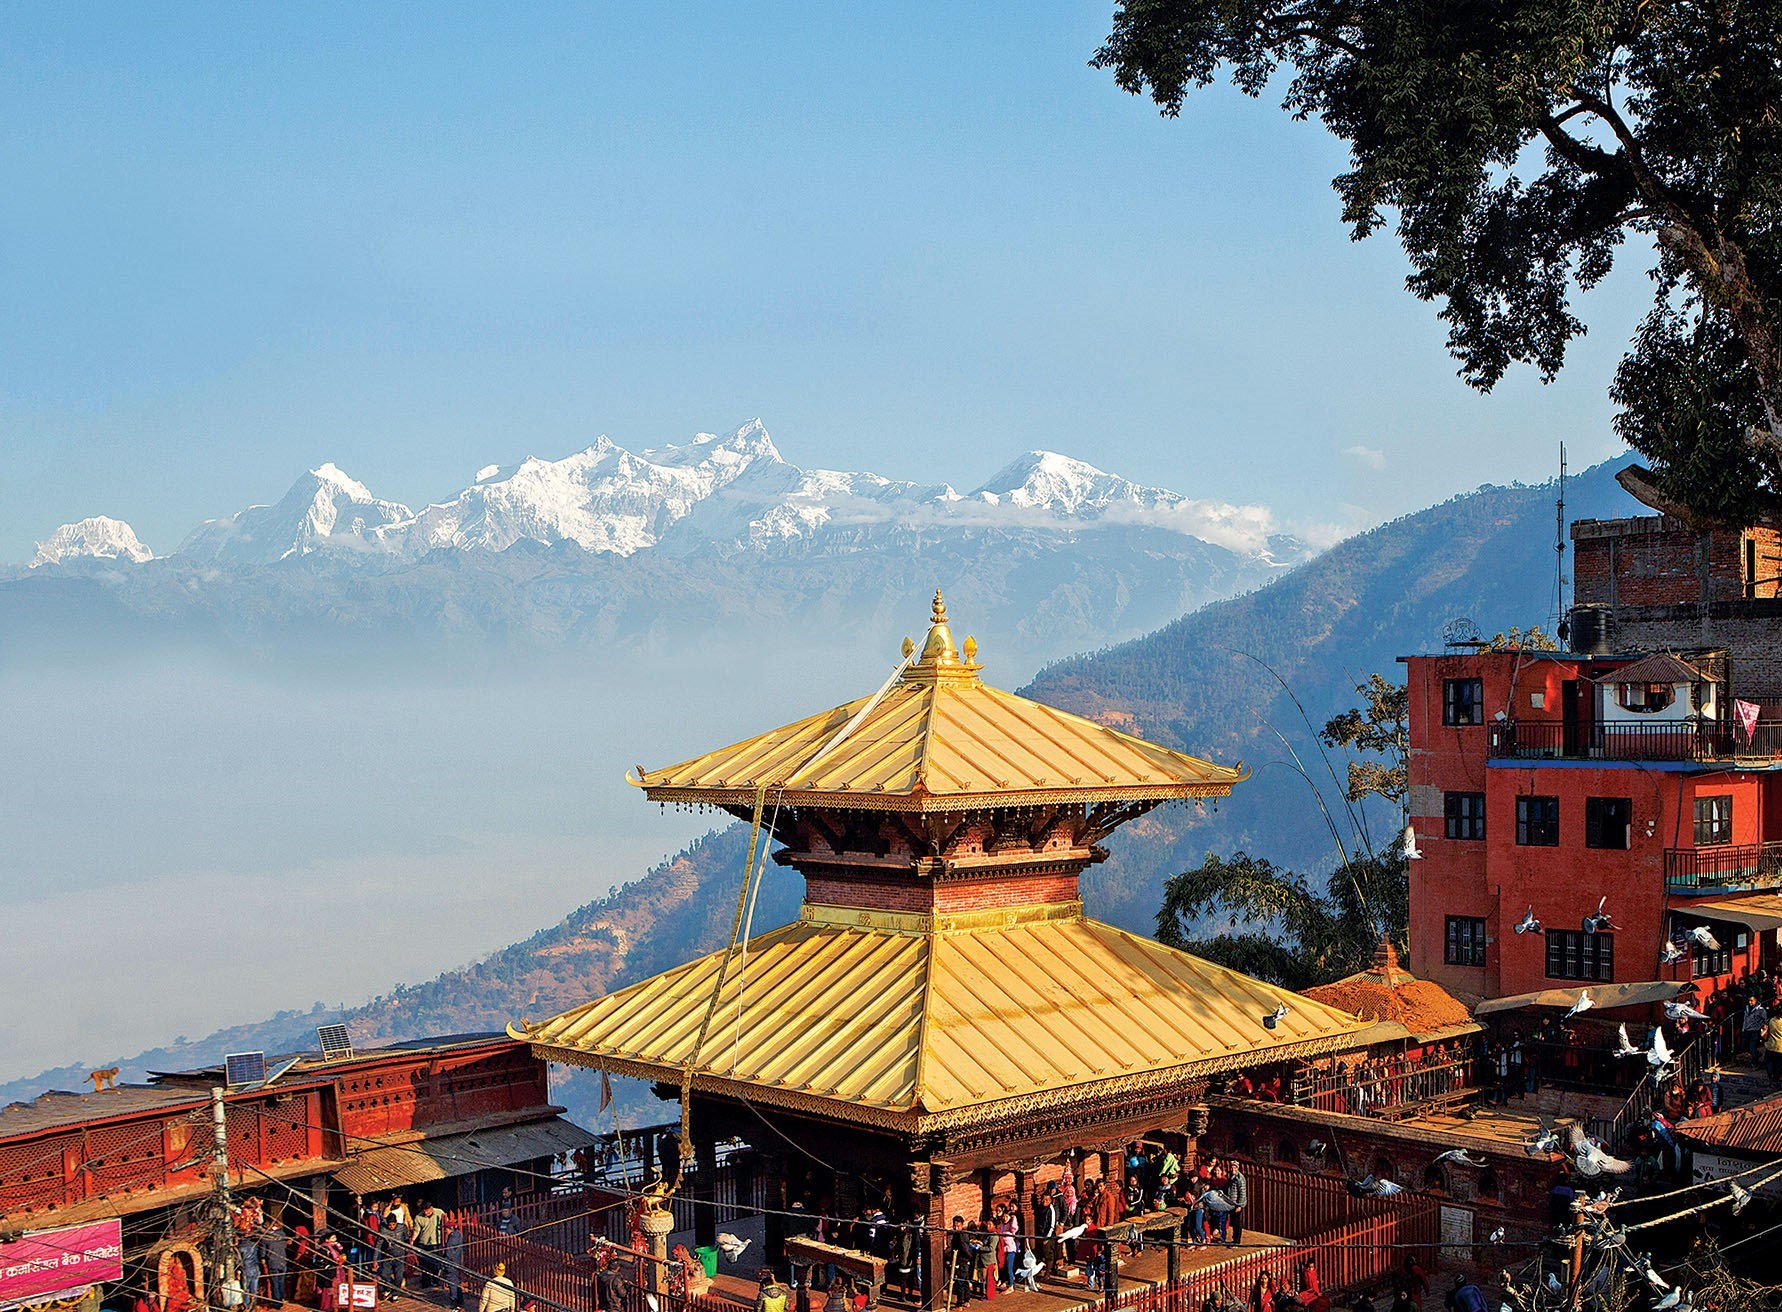 tourist attractions in manakamana nepal